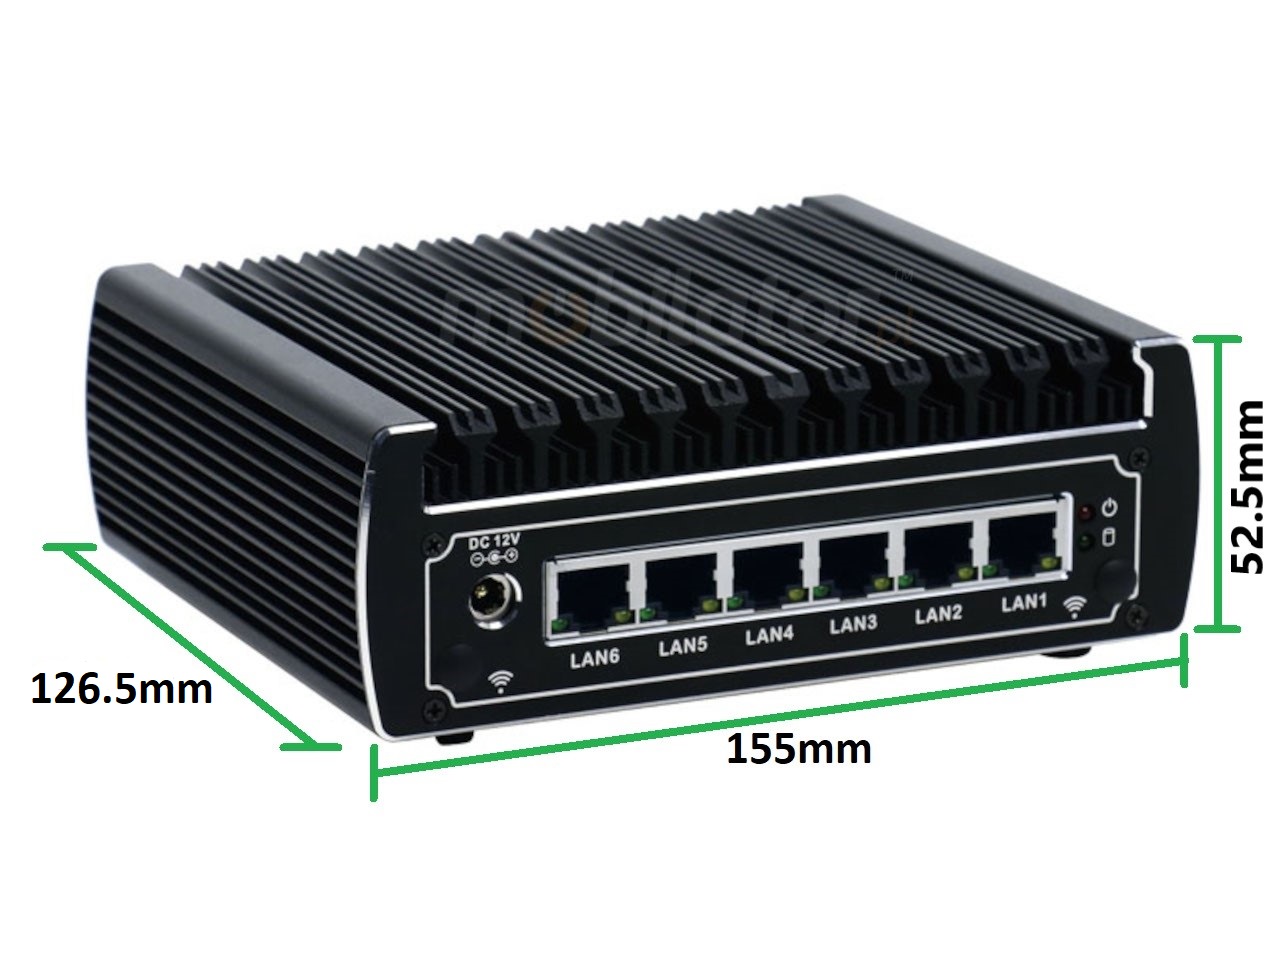   IBOX N133 v.3, wymiary, SSD, DDR4, przemysowy, may, szybki, niezawodny, fanless, industrial, small, LAN, INTEL i3